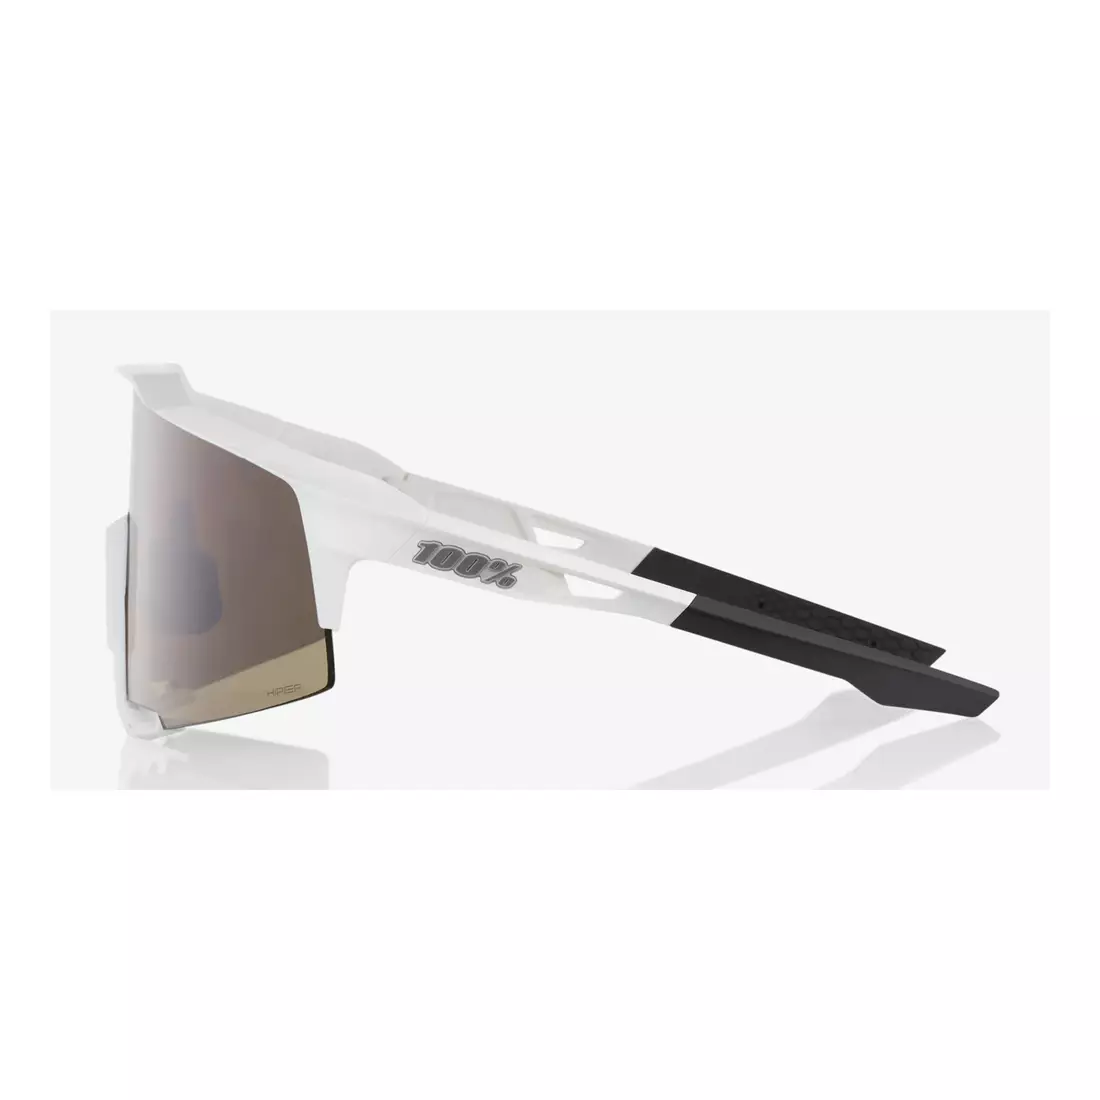 100% Sportbrille SPEEDCRAFT (HiPER Silver Mirror Lens) Matte White STO-61001-404-03